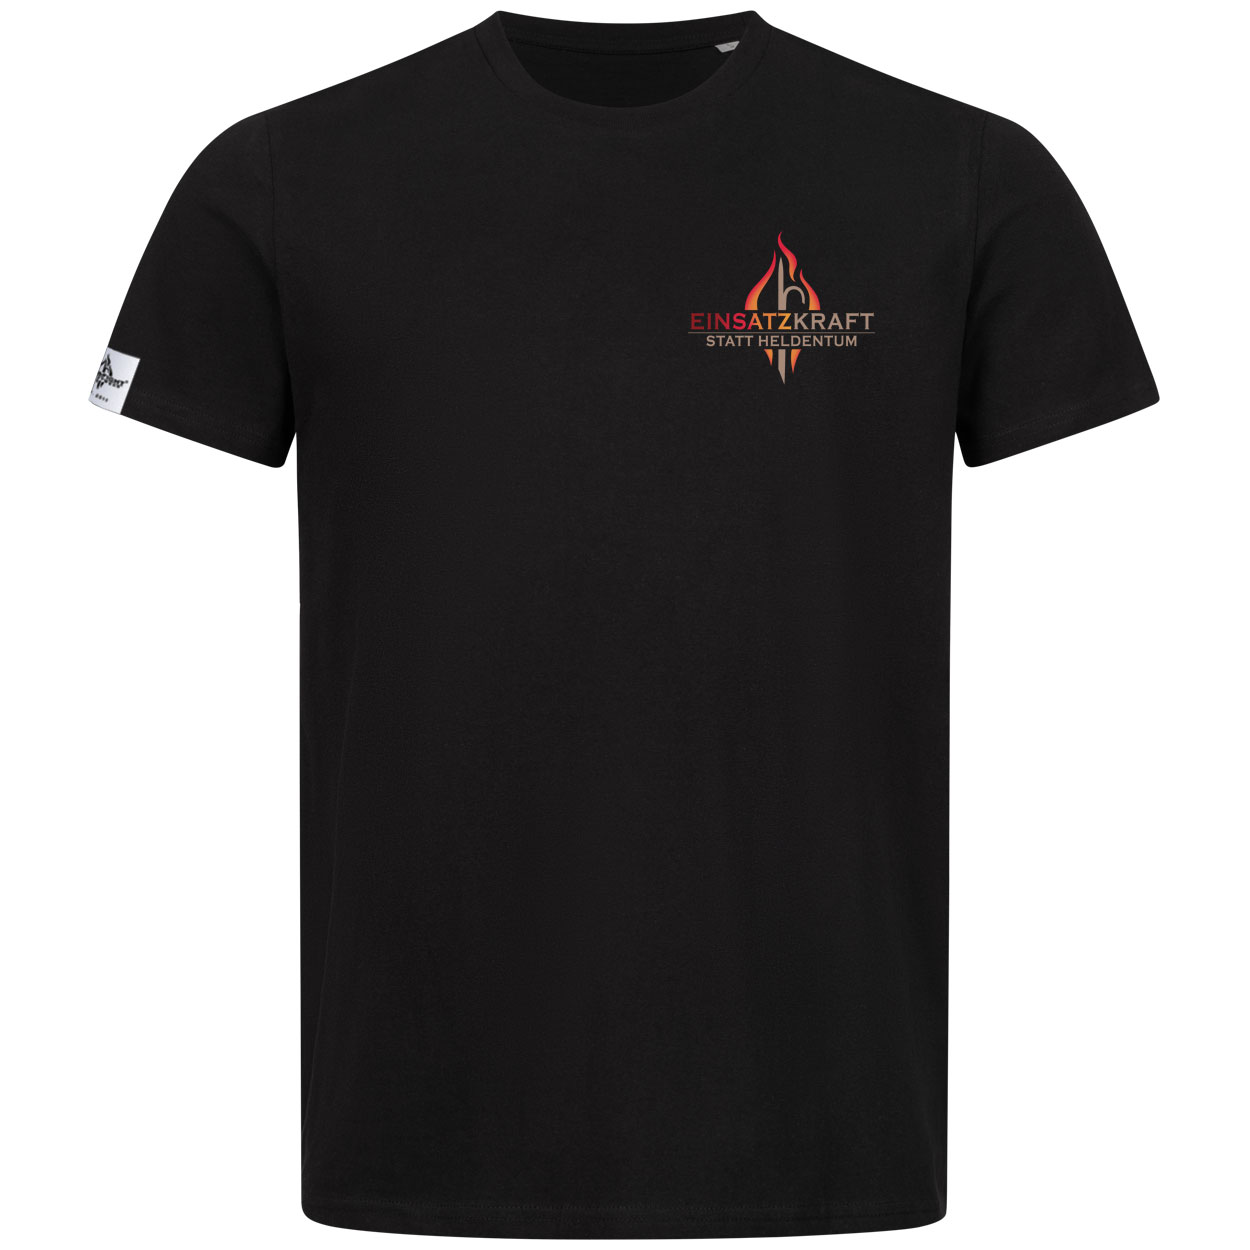 Einsatzkraft® statt Heldentum Design - Feuerwehrmann T-Shirt